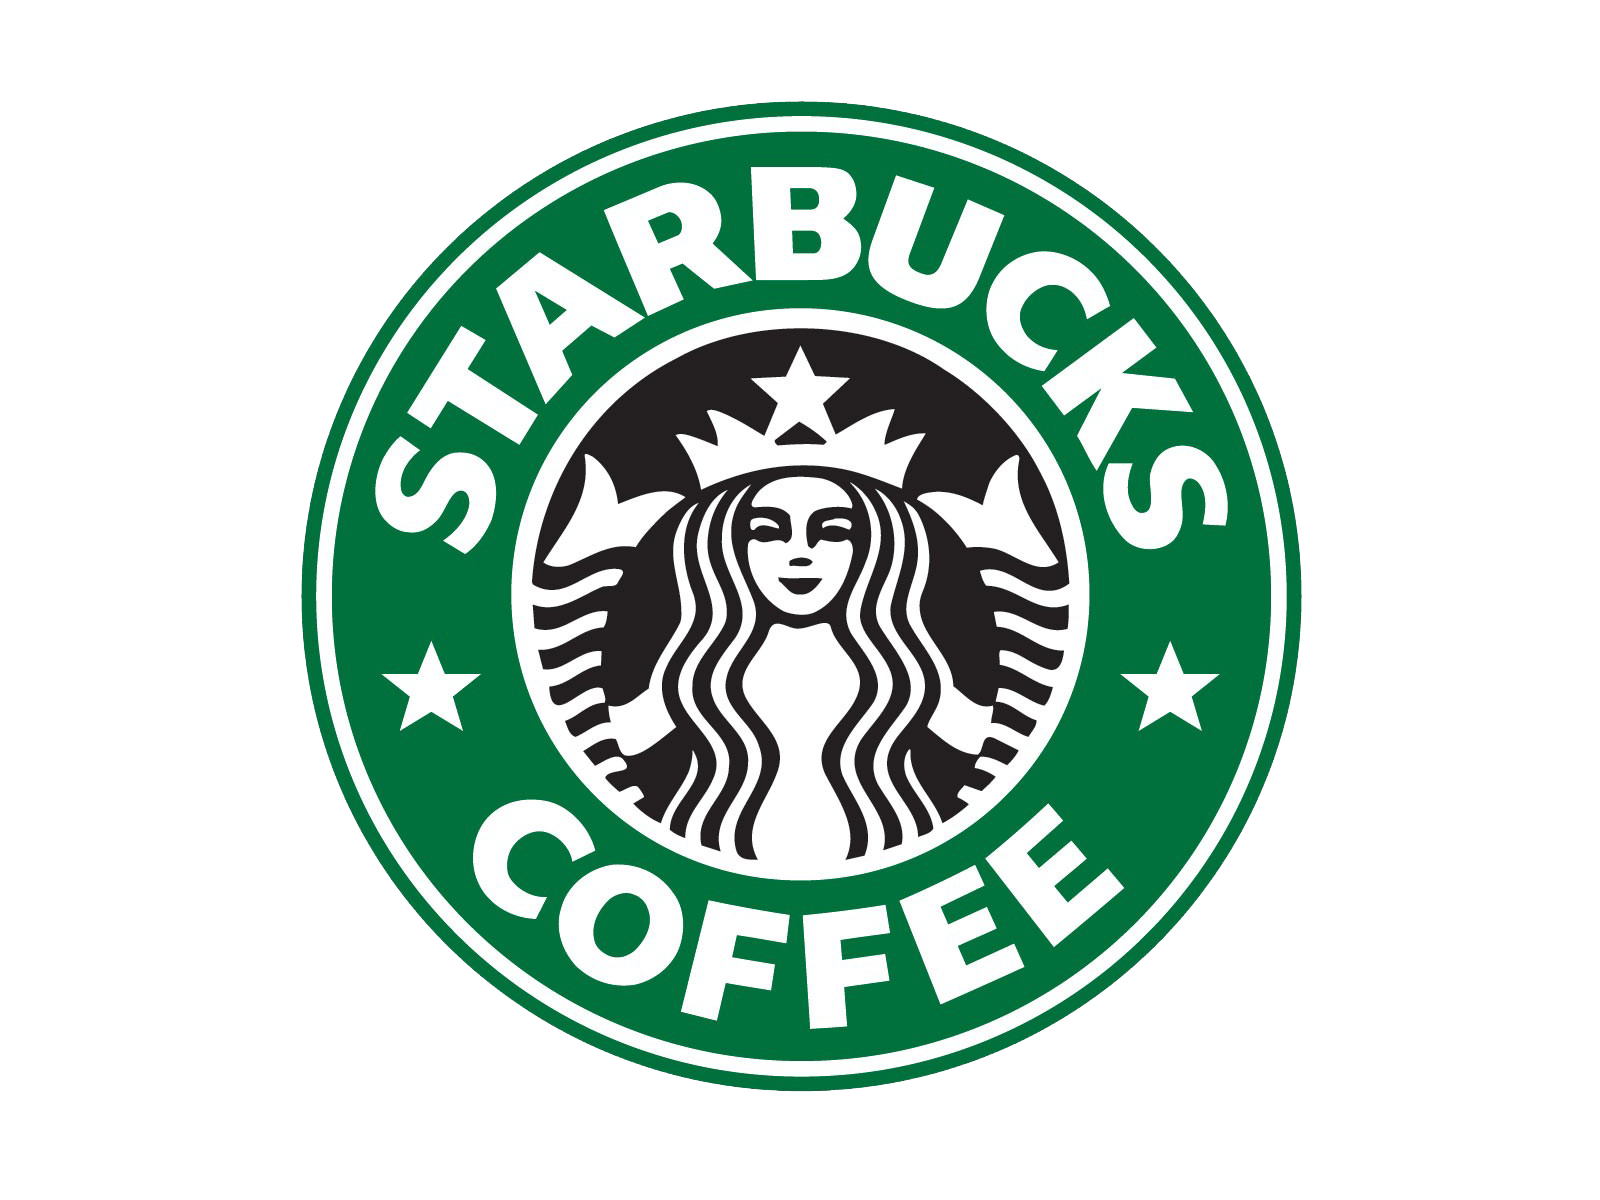 Starbucks Logo PNG Image HD